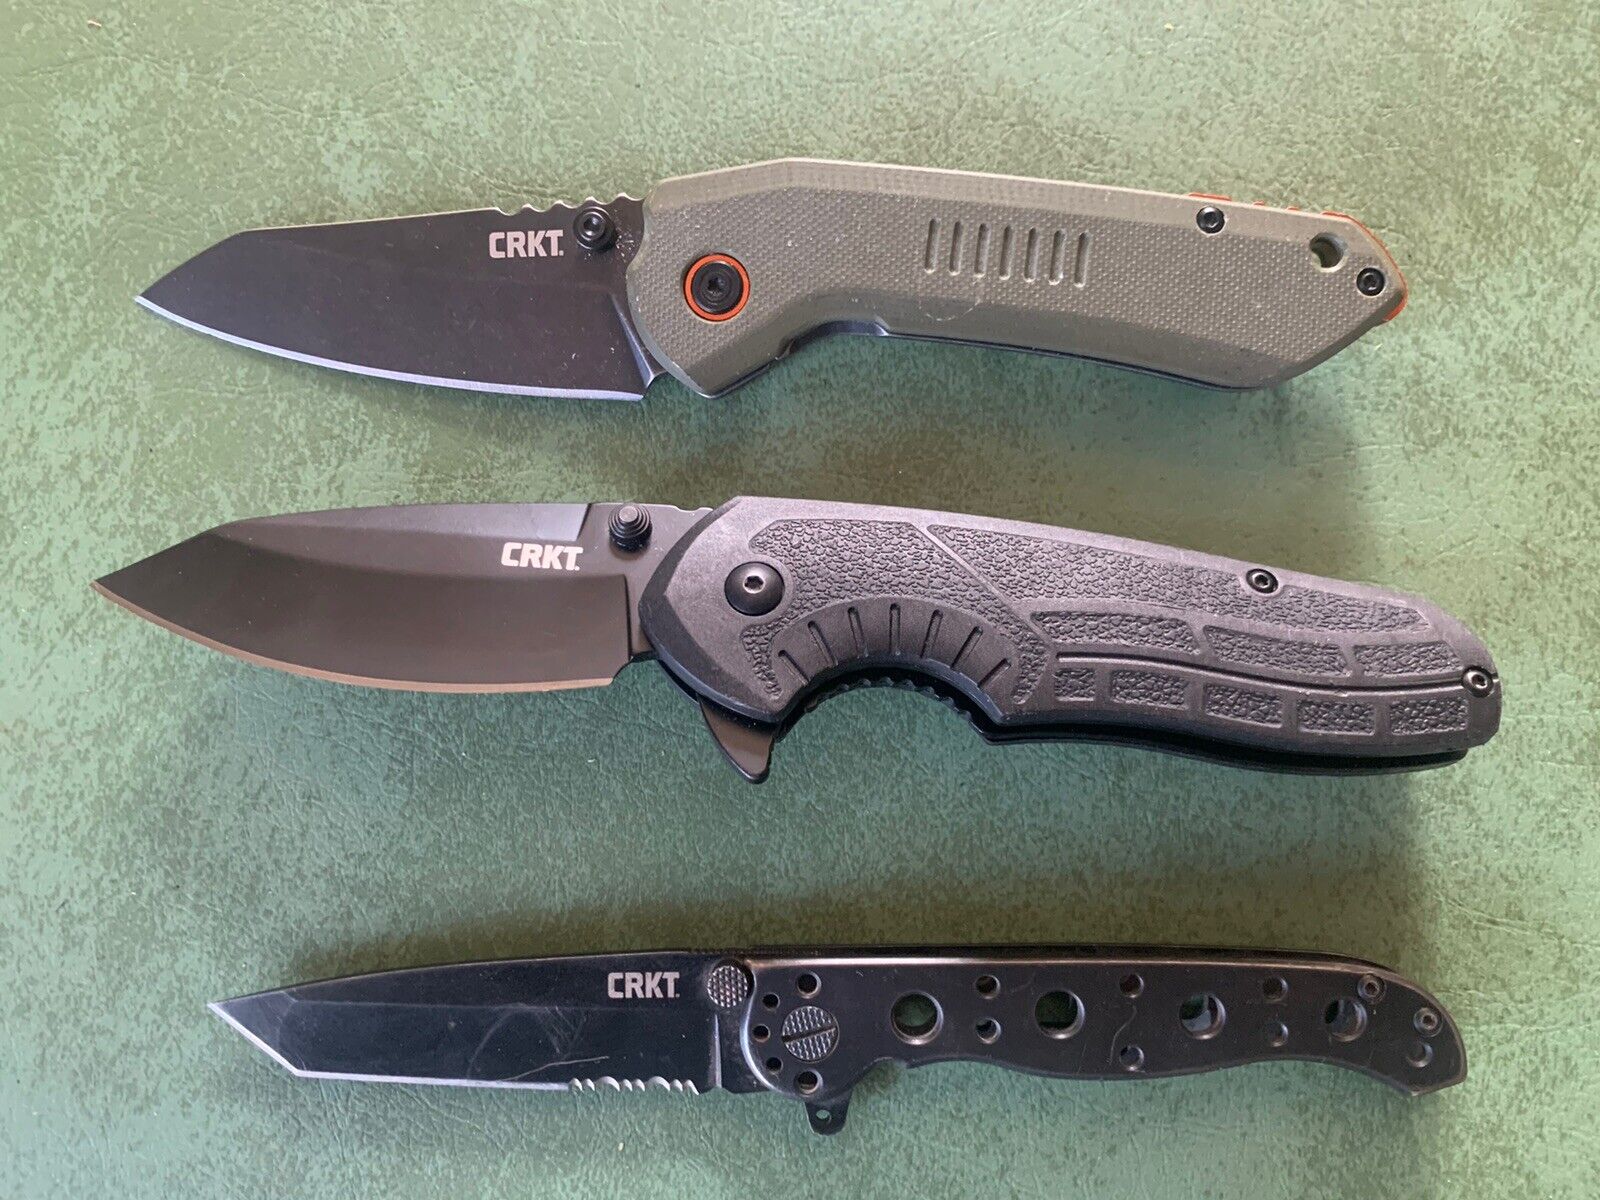 Lot of 3 CRKT Folding Pocket Knives: OVERLAND, COPACETIC, M16-10KS - Excellent